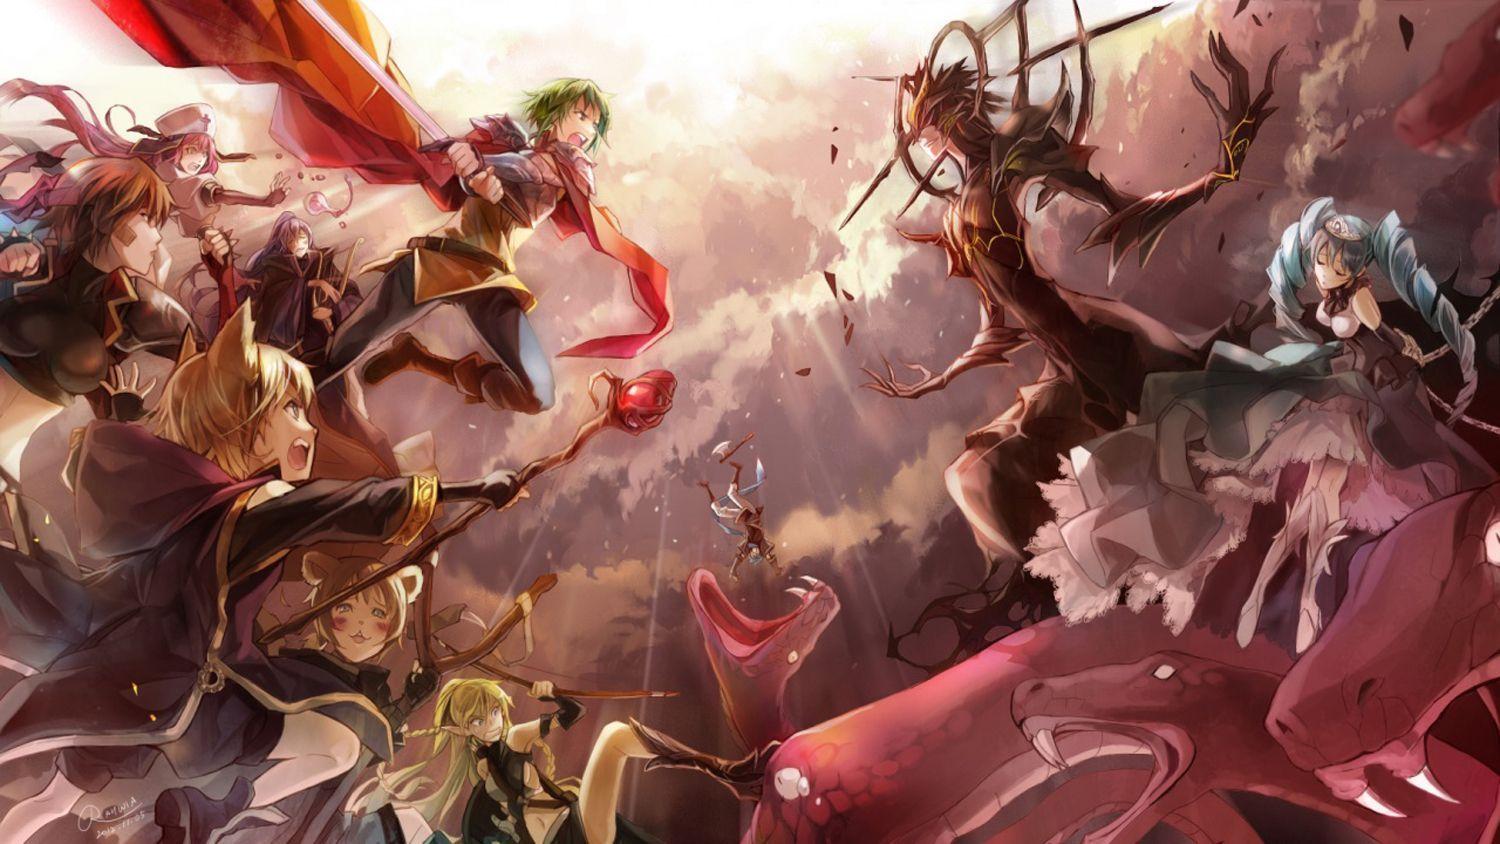 Anime Battle Wallpaper Free Anime Battle Background